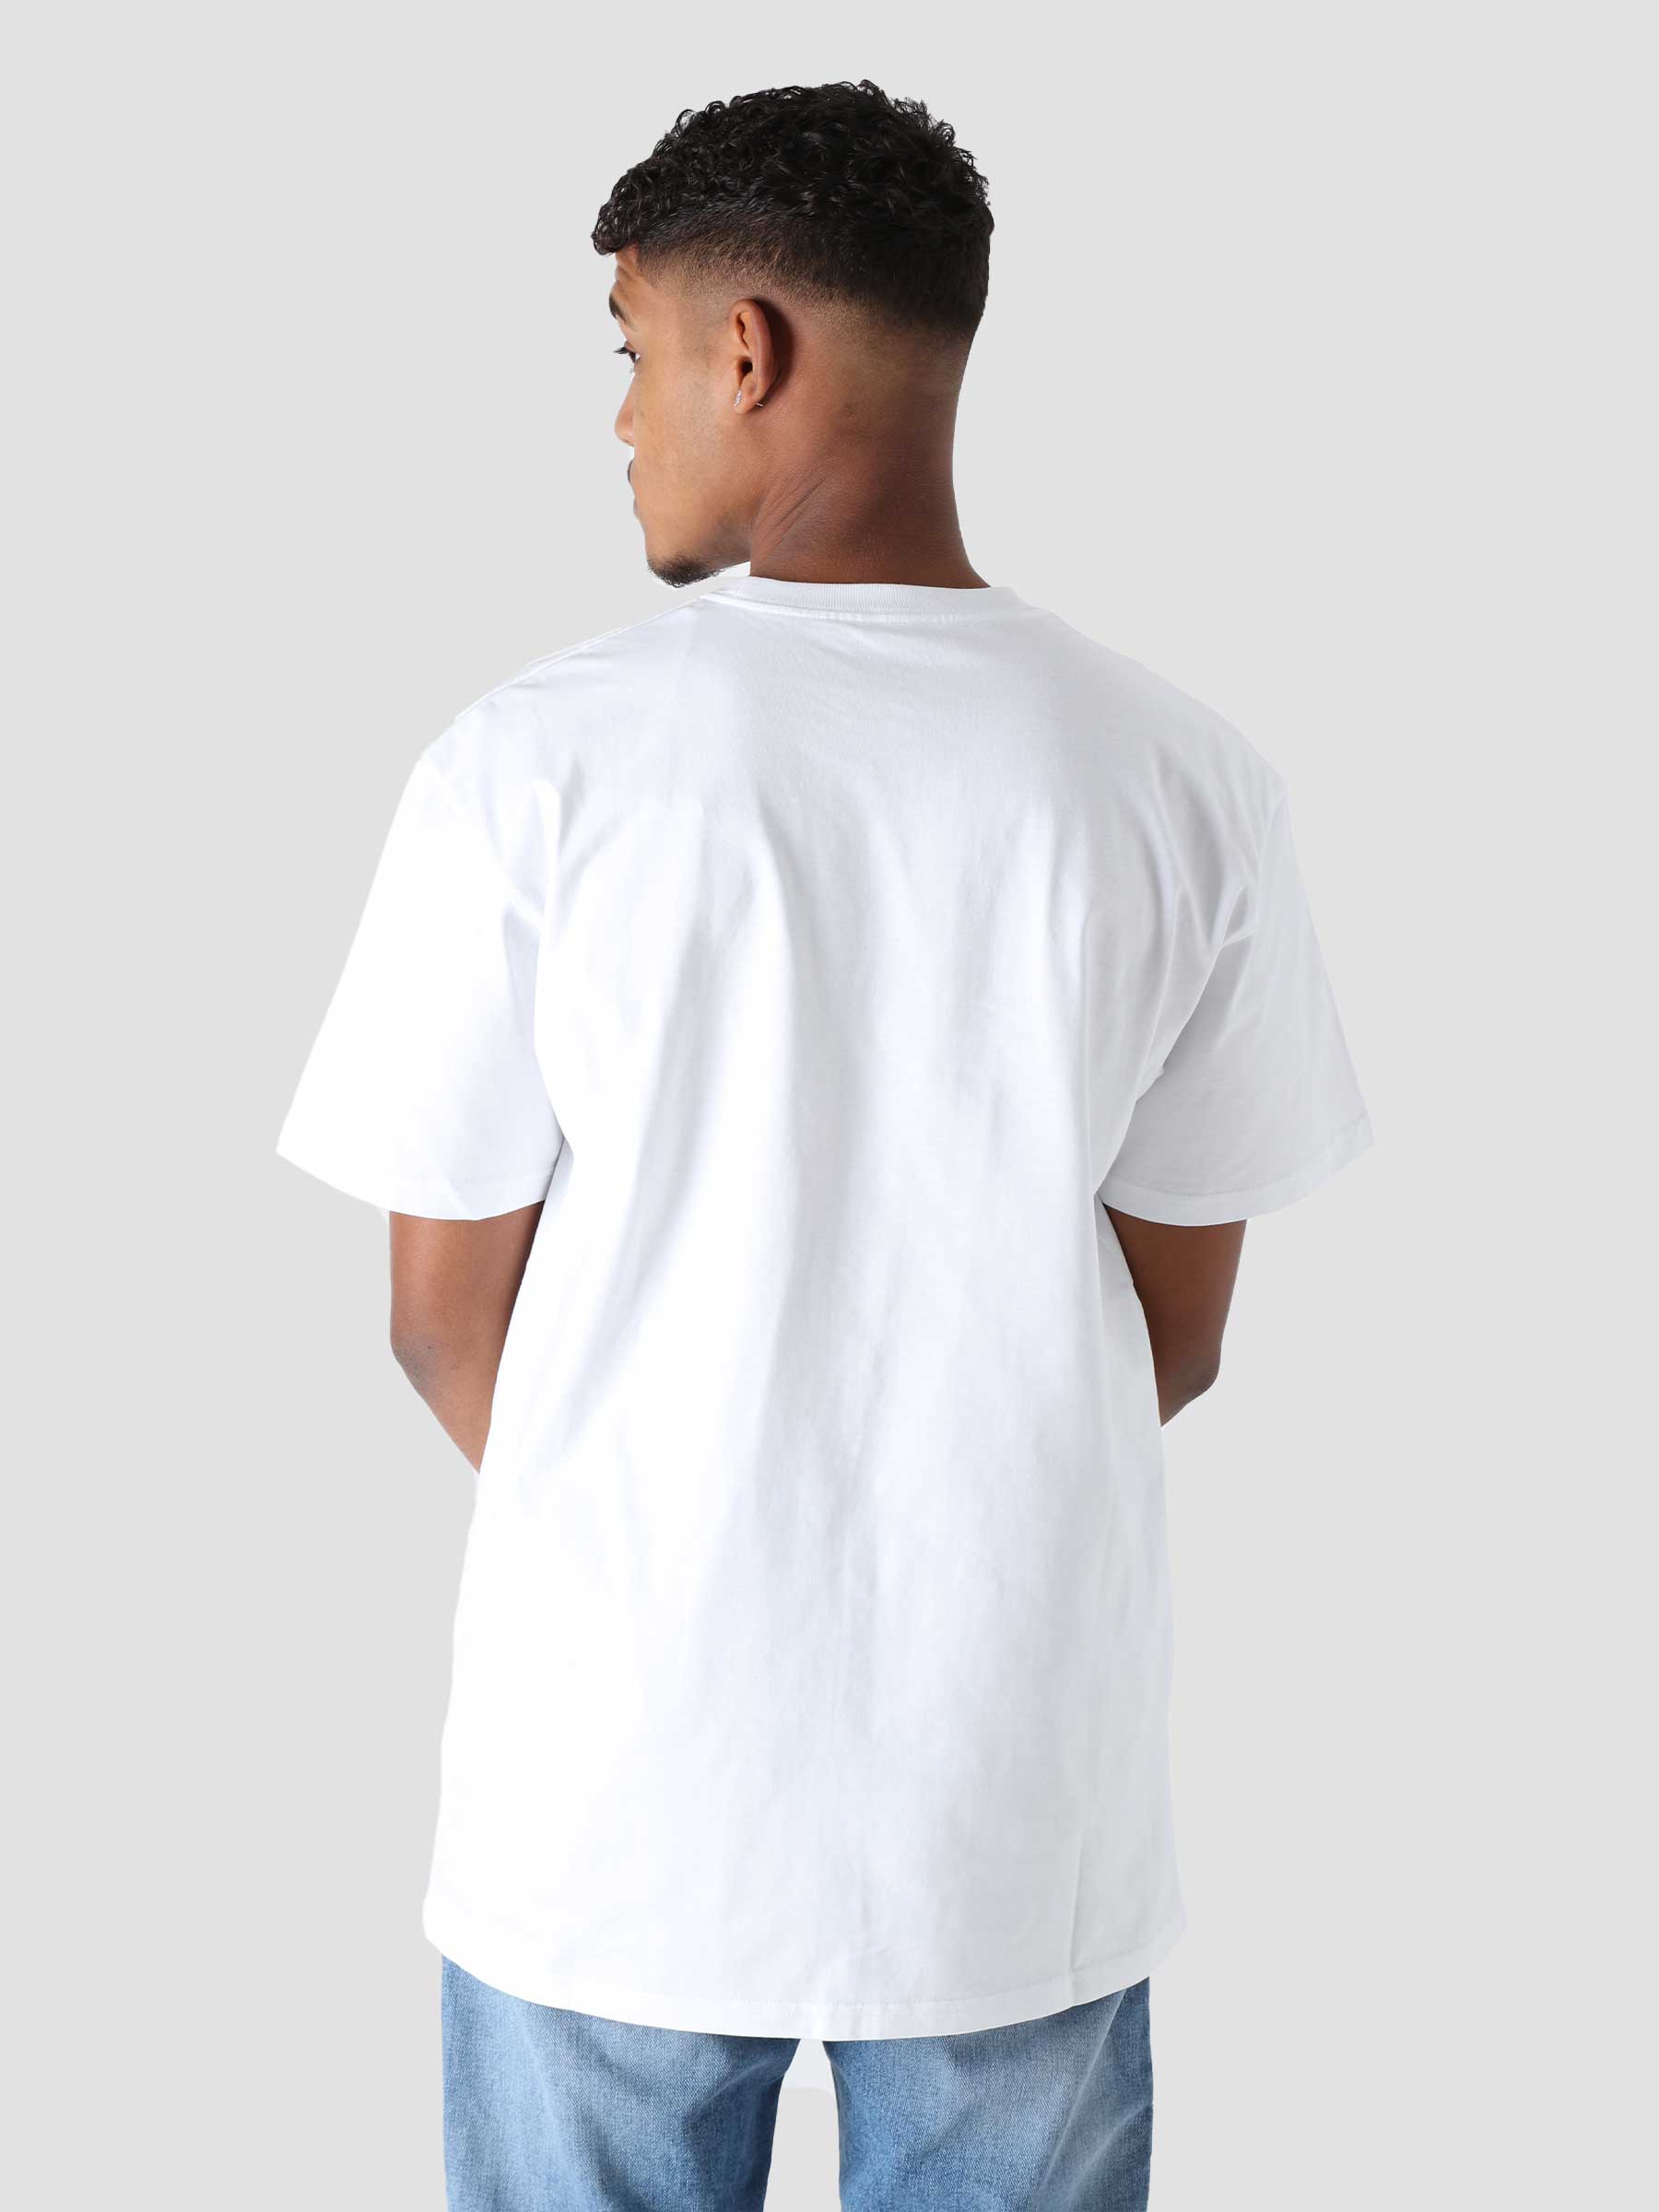 Chase T-Shirt White Gold I026391